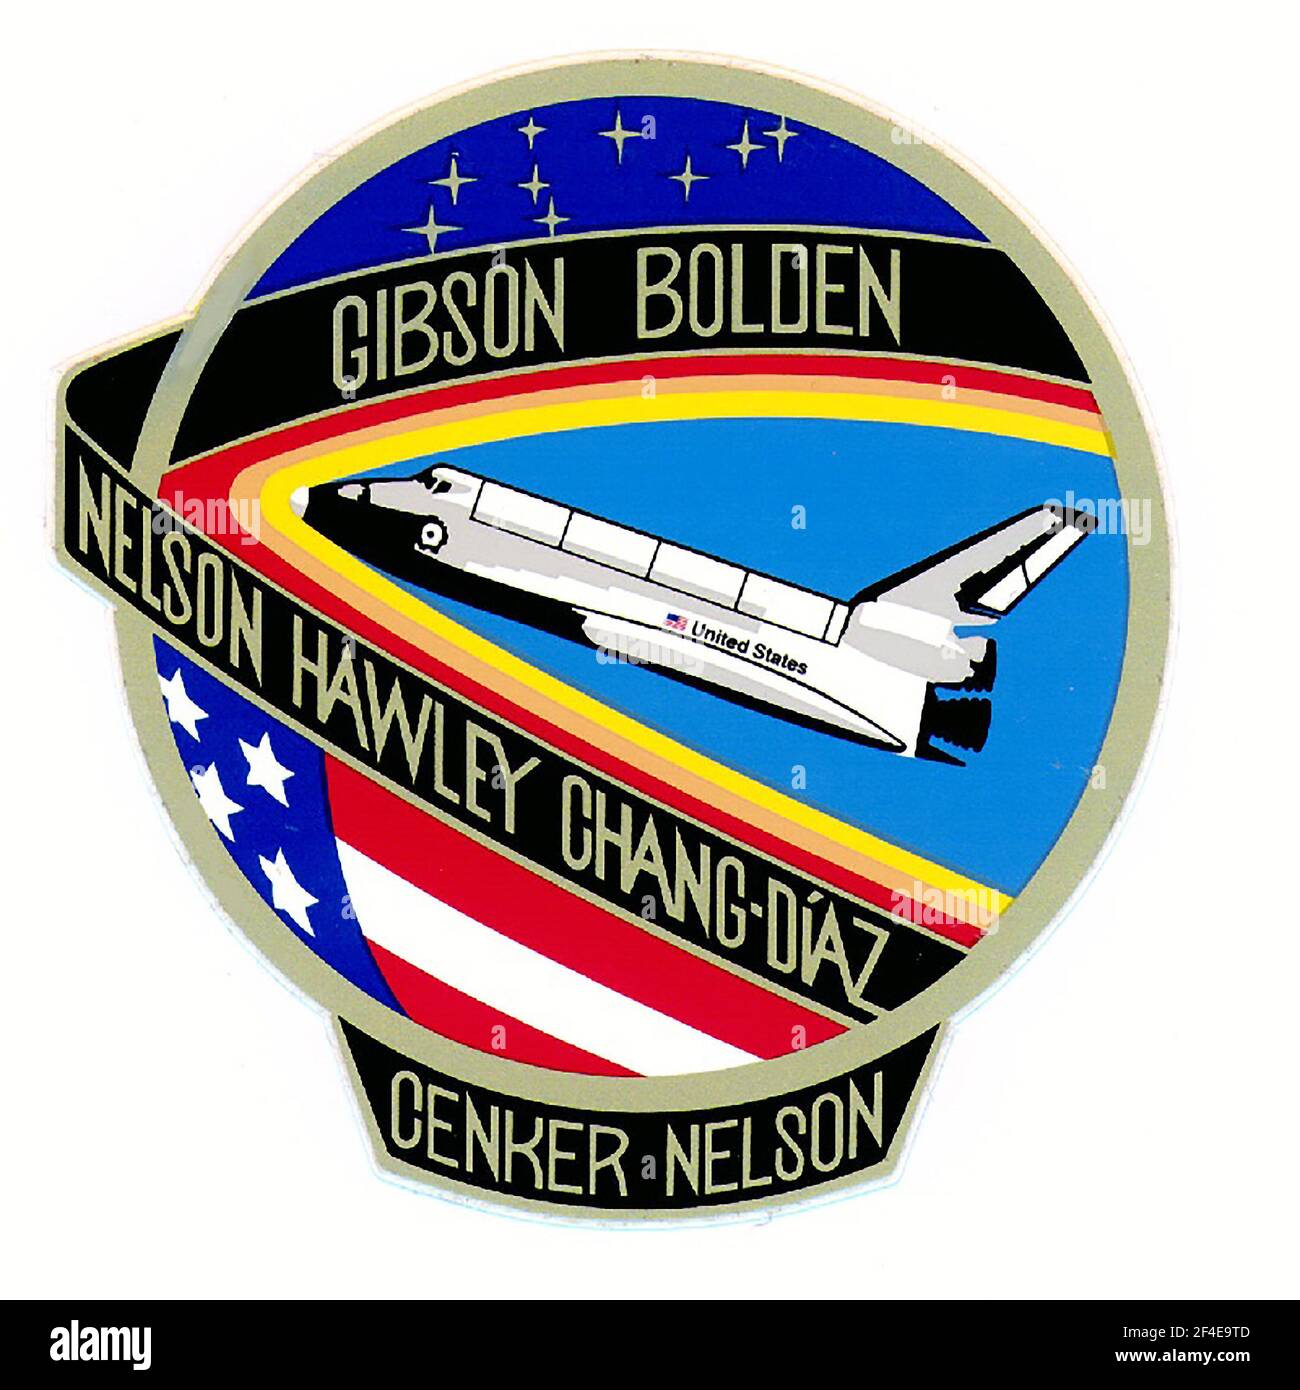 Mission Patch für Space Shuttle Columbia STS-61C Mission, die am 12. Januar 1986 vom John F. Kennedy Space Center, Florida gestartet wurde und am 18. Januar 1986 auf der Edwards Air Force Base, Kalifornien landete die Astronauten an Bord waren: Robert L. Gibson, Charles F. Bolden, Jr., Franklin R. Chang-Diaz, Steven A. Hawley, George D. Nelson, Robert J. Cenker und US-Repräsentant Bill Nelson (Demokrat von Florida). Mehrere Experimente wurden eingesetzt, darunter das Comet Halley Active Monitoring Program (CHAMP) Experiment. Am 19. März 2021 kündigte US-Präsident Joe Biden an, er beabsichtige Stockfoto